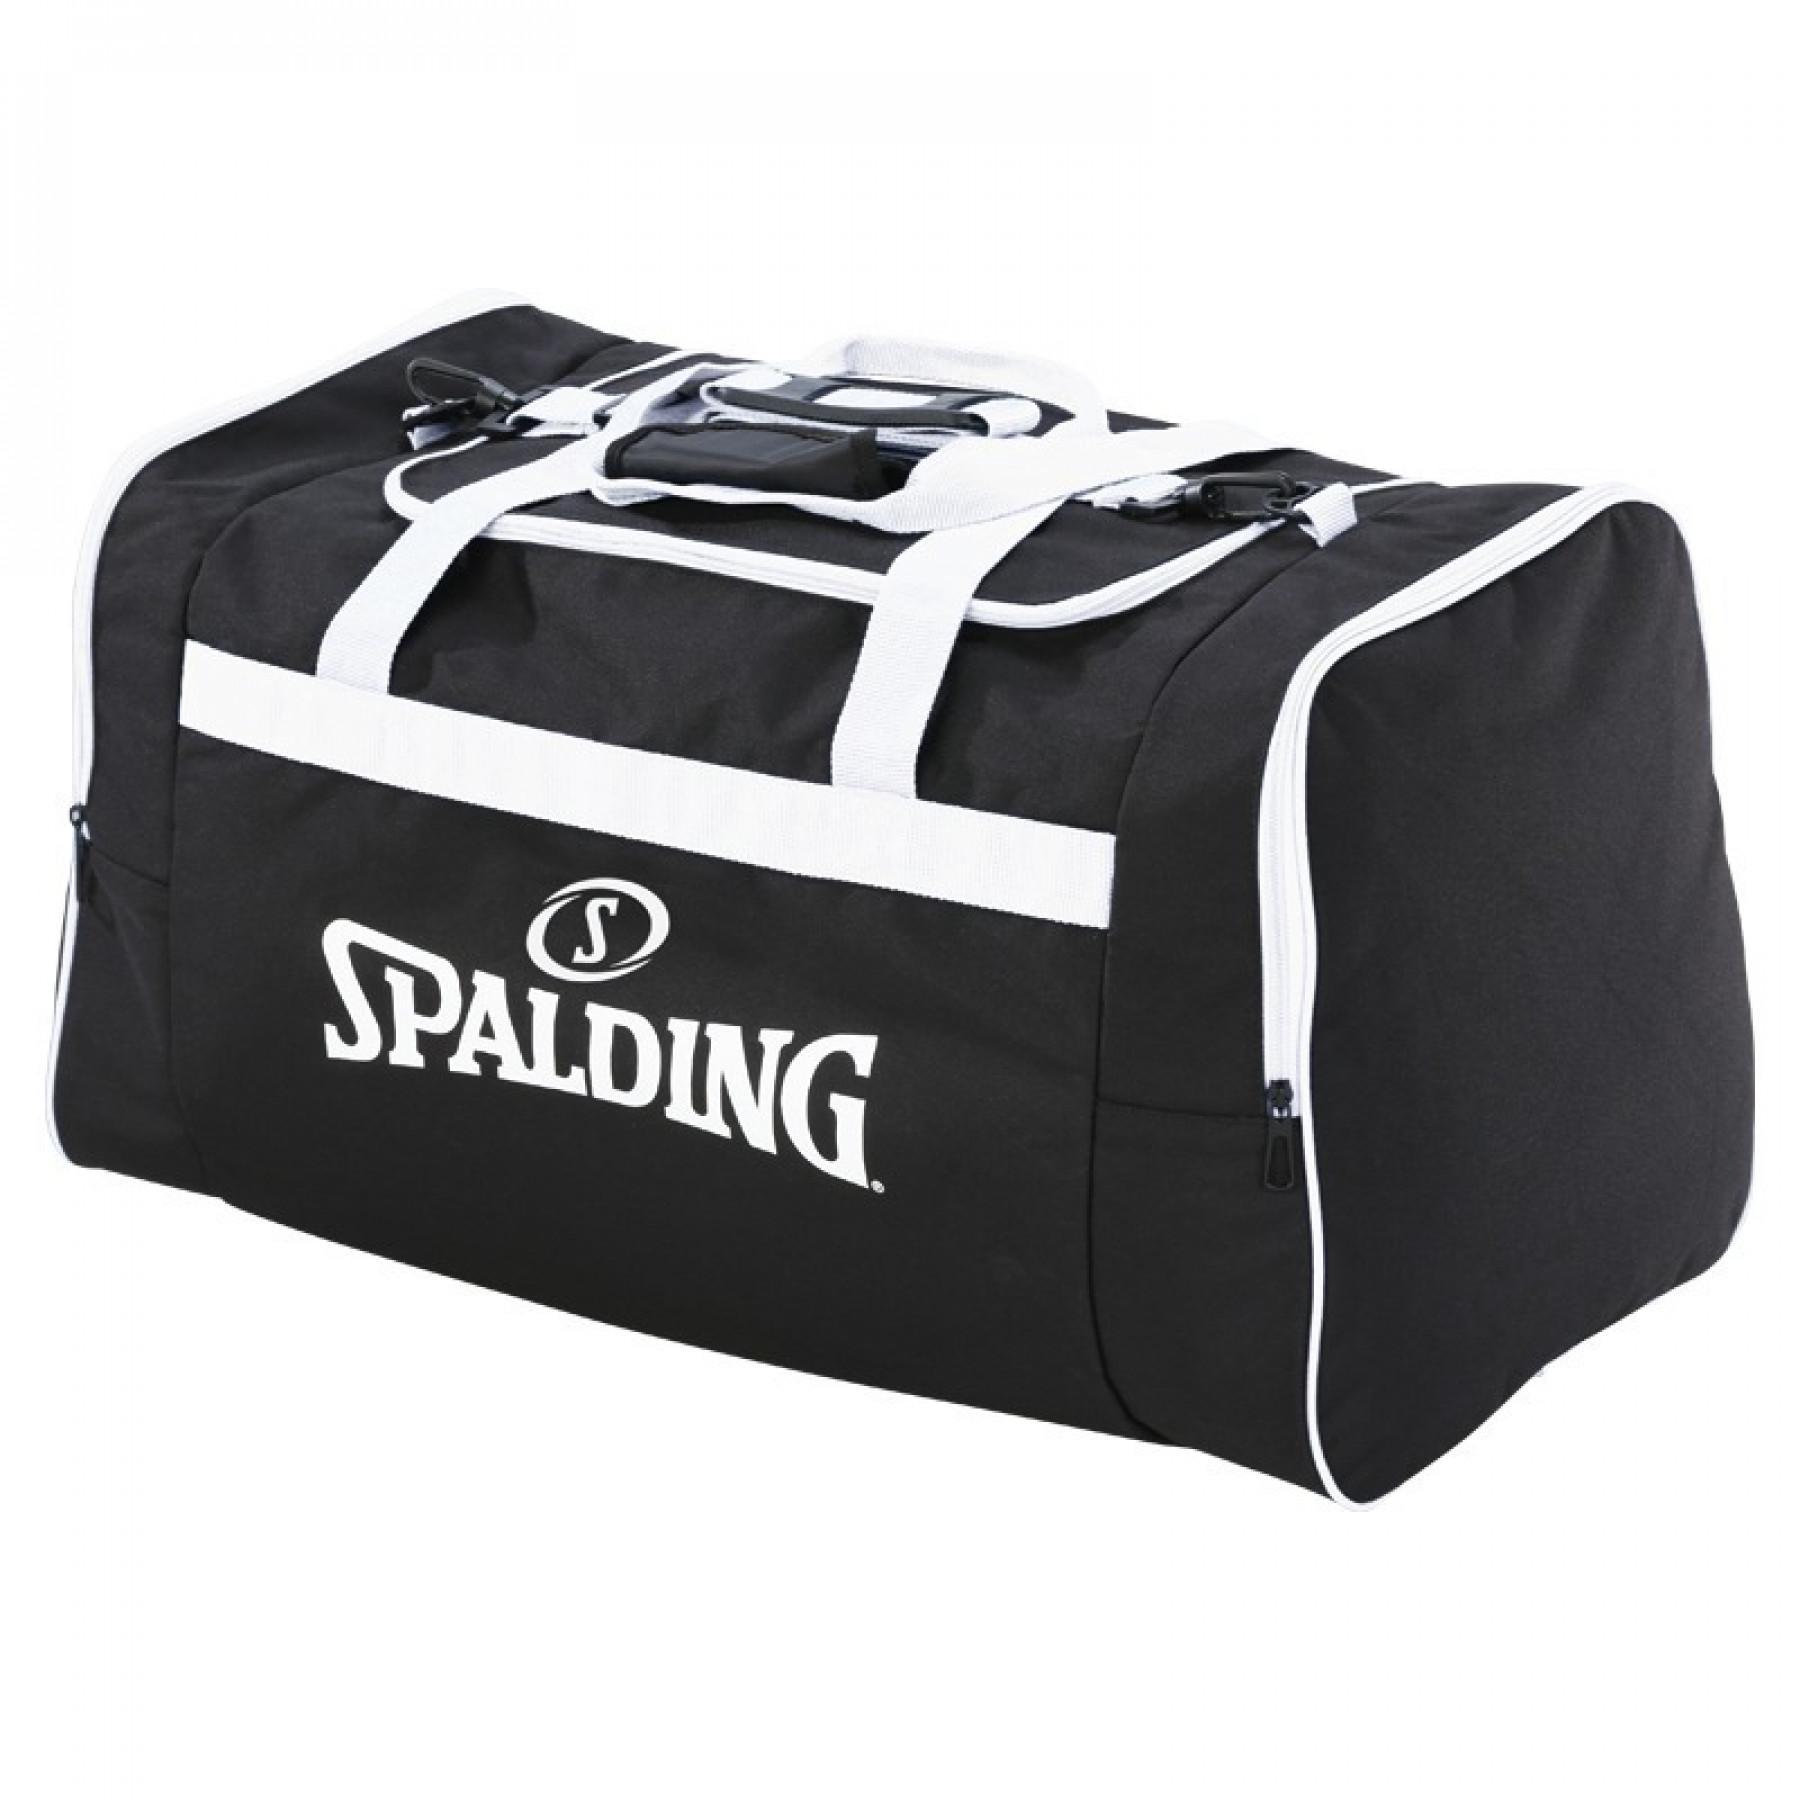 Borsa della squadra Spalding (80 litres)